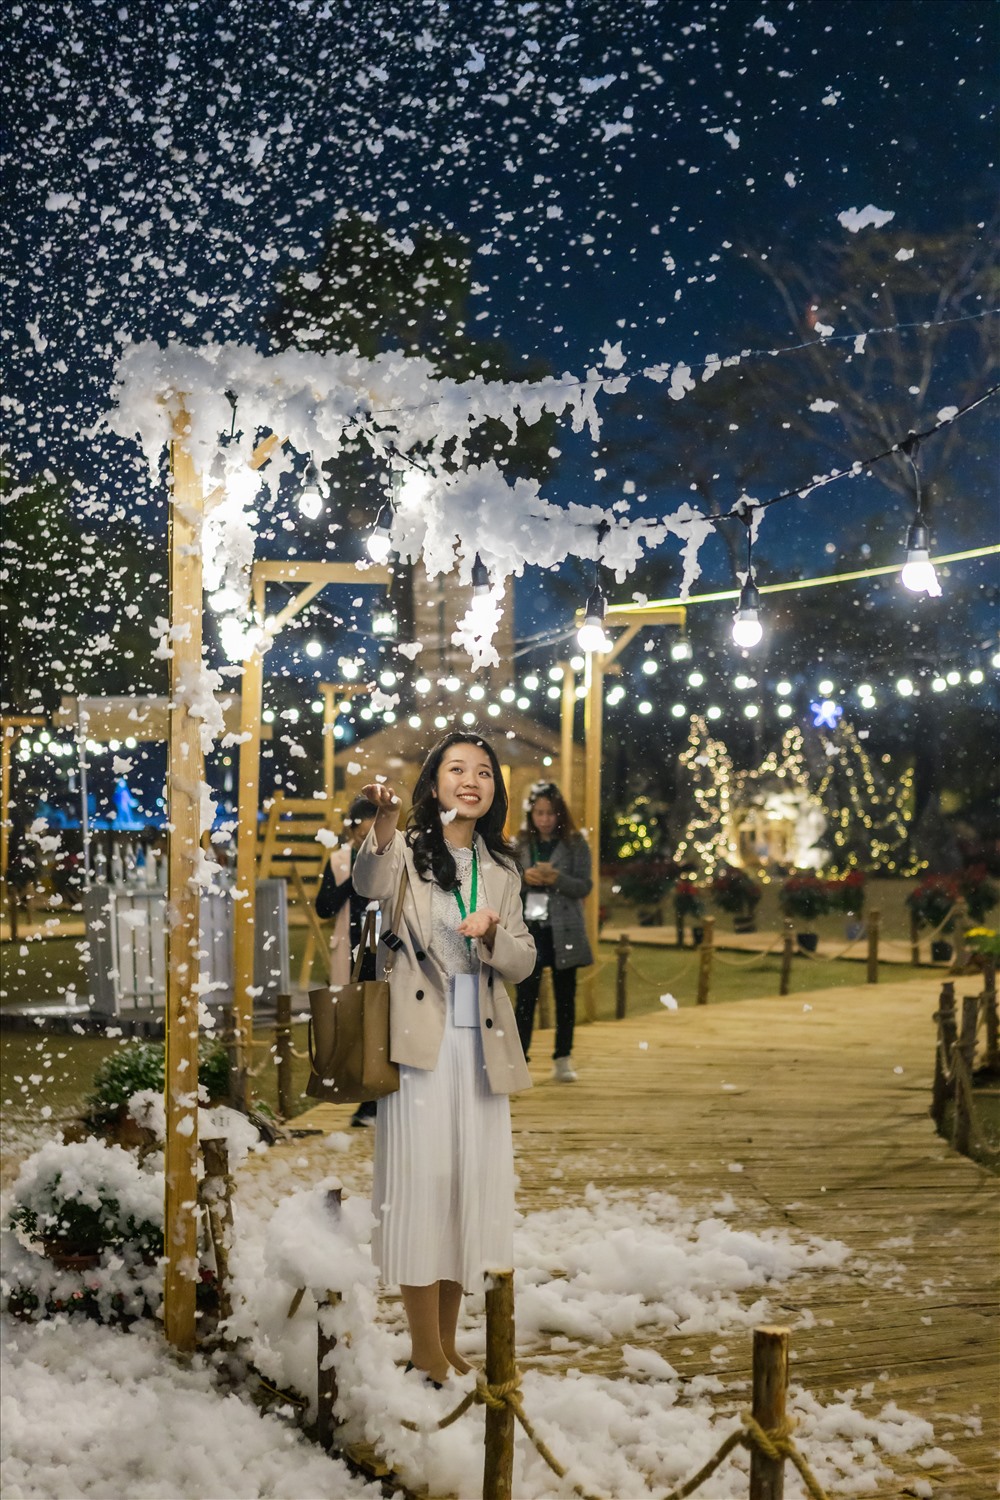 Tuyết rơi mùa Giáng Sinh Hà Nội mang đến cho bạn một trải nghiệm tuyệt vời khi cảm nhận cái lạnh của mùa đông, trước những khối tuyết cực kỳ đẹp mắt. Hãy xem những bức ảnh về tuyết rơi mùa Giáng Sinh tại Hà Nội để vừa có trải nghiệm vừa có kỷ niệm đáng nhớ.